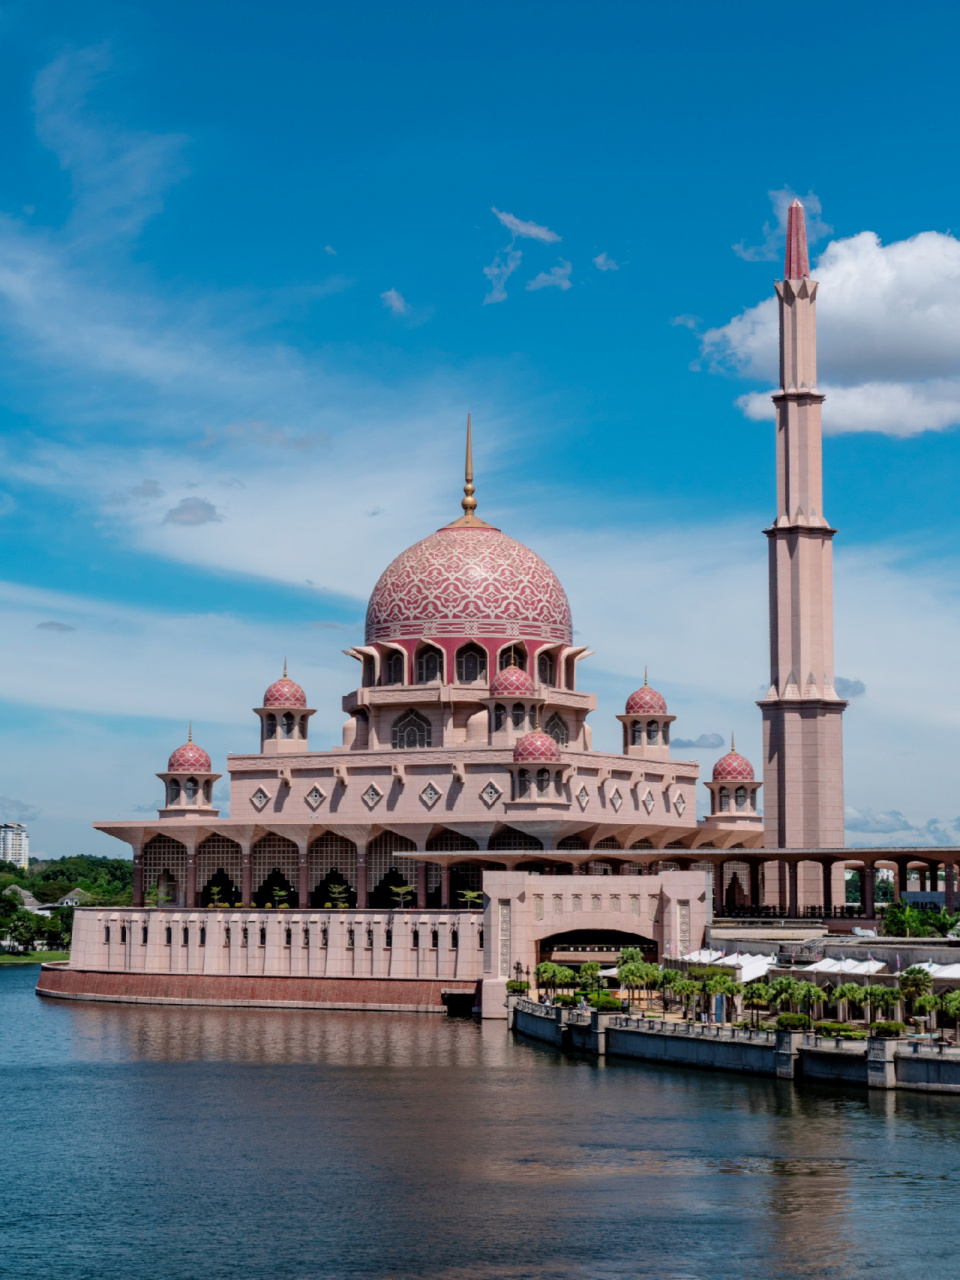 对马来西亚文化和伊斯兰建筑艺术感兴趣的游客,不妨去这些清真寺转转